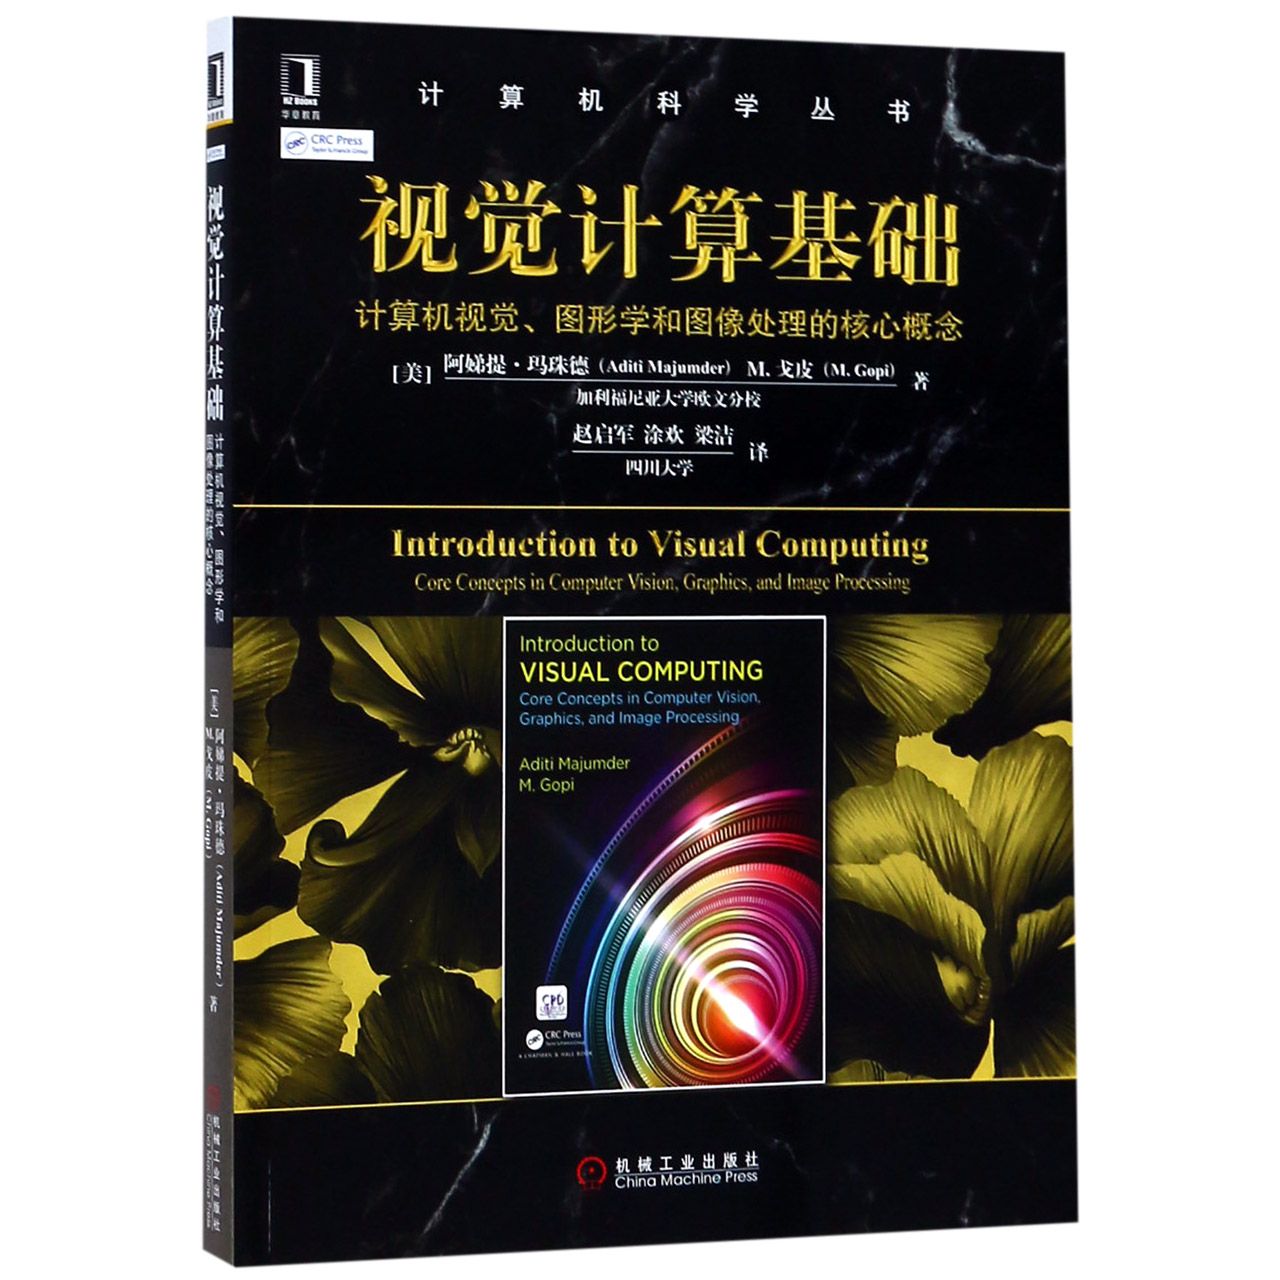 正版图书视觉计算基础(计算机视觉图形学和图像处理的核心概念)/计算机科学丛书